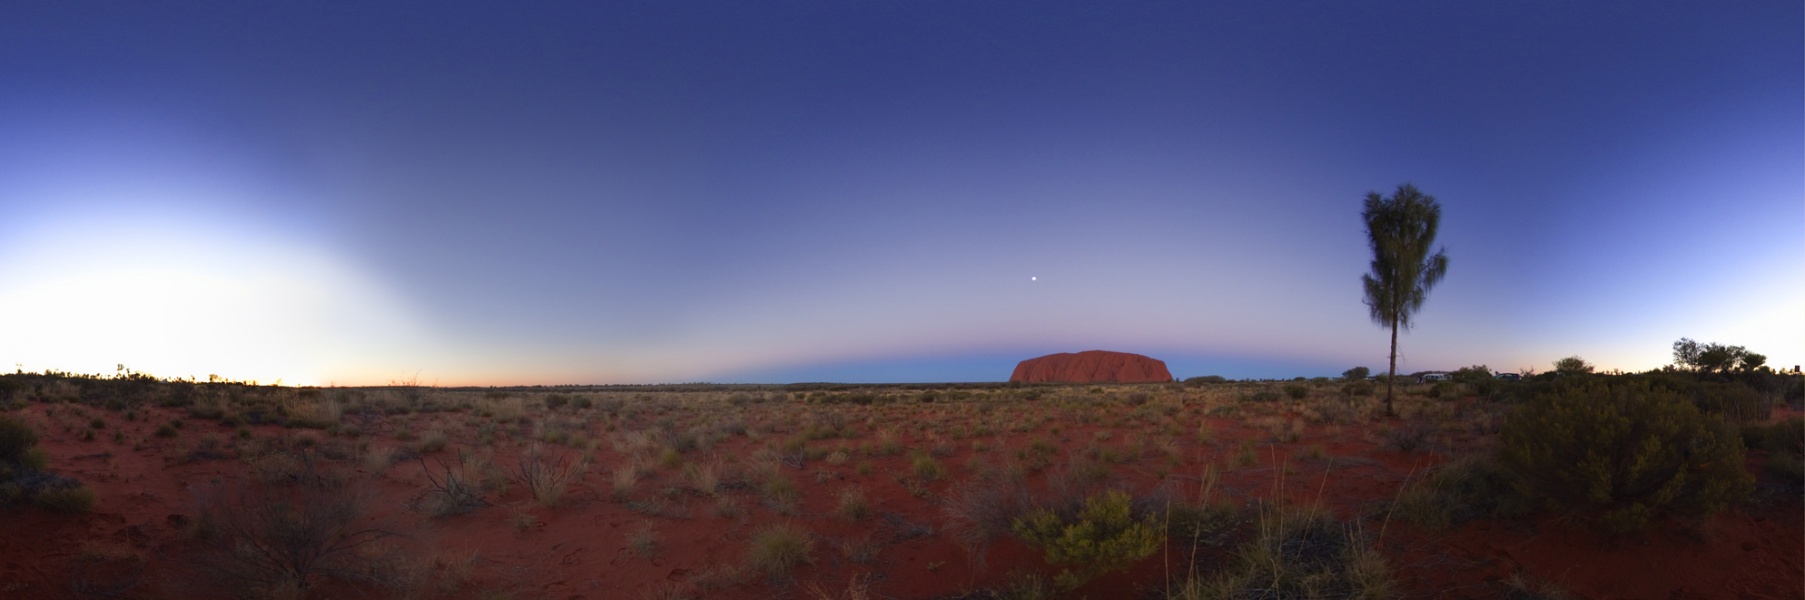 Das Panorama zeigt die Landschaft um den Uluru in Australien. Links ist der helle Himmelsteil, wo die Sonne untergegangen ist, rechts neben der Mitte ragt Ayers Rock auf, dahinter steigt der Erdschatten auf. Der Himmel ist glasklar.